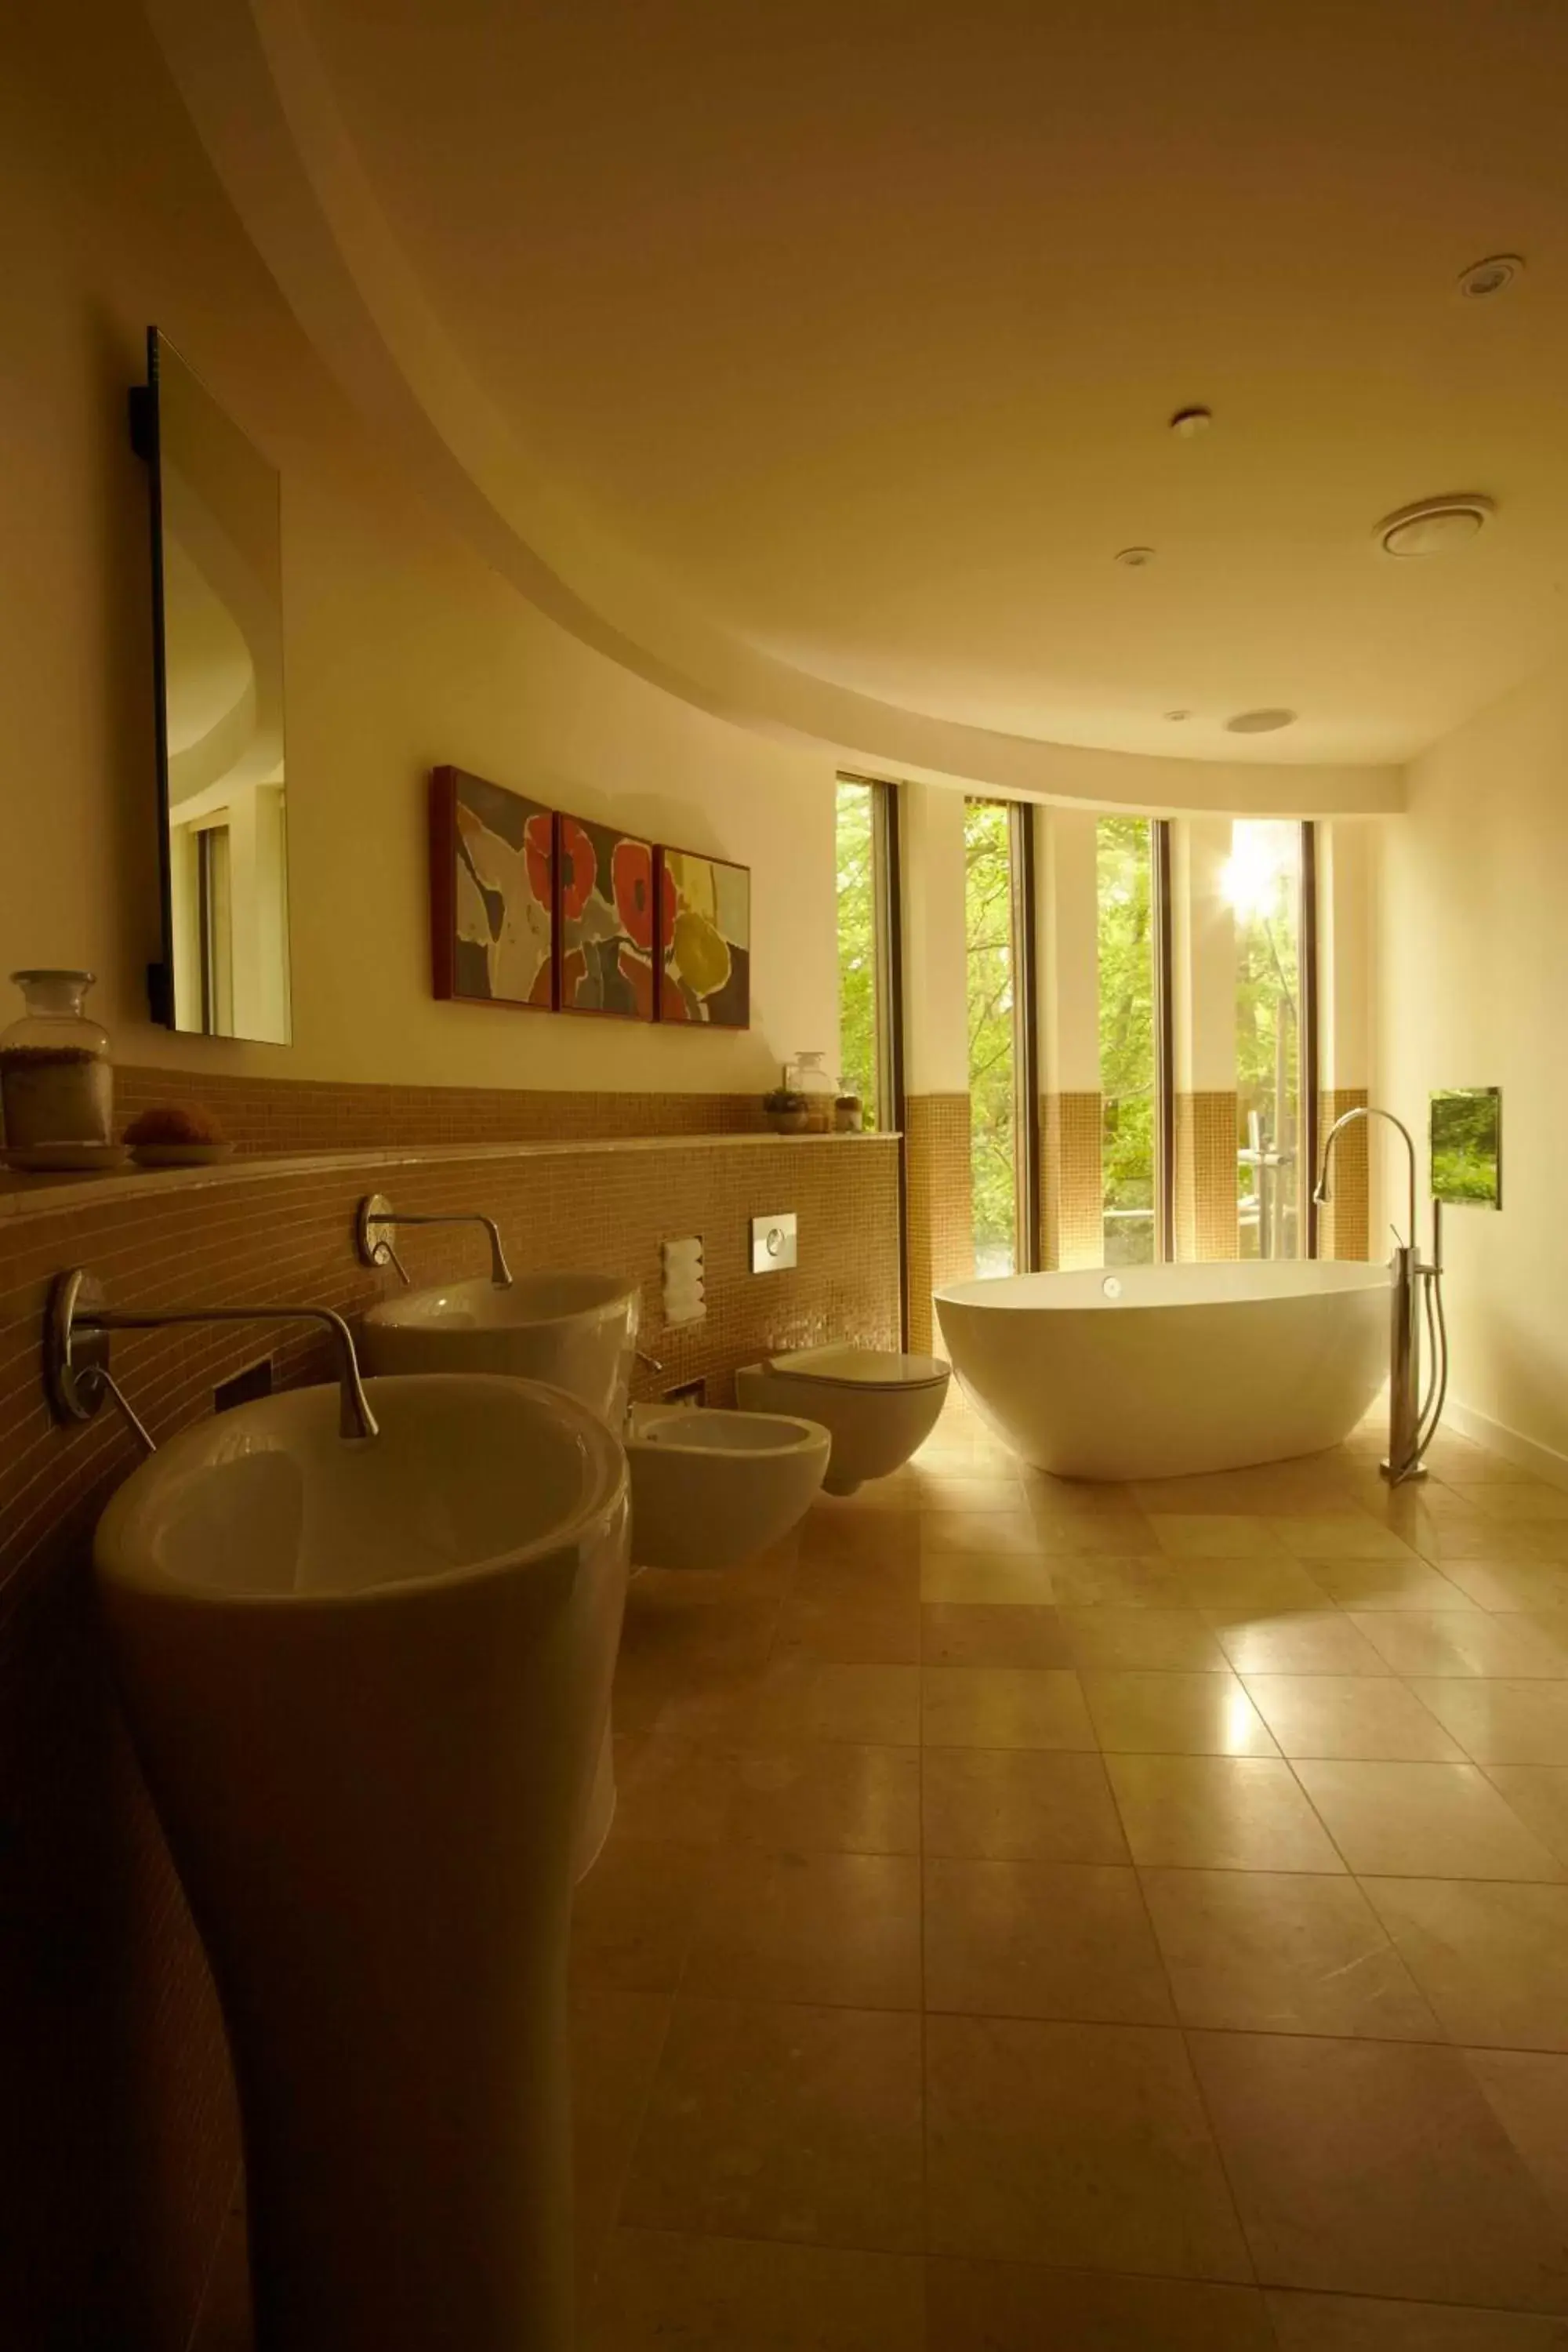 Bathroom in Chewton Glen Hotel - an Iconic Luxury Hotel